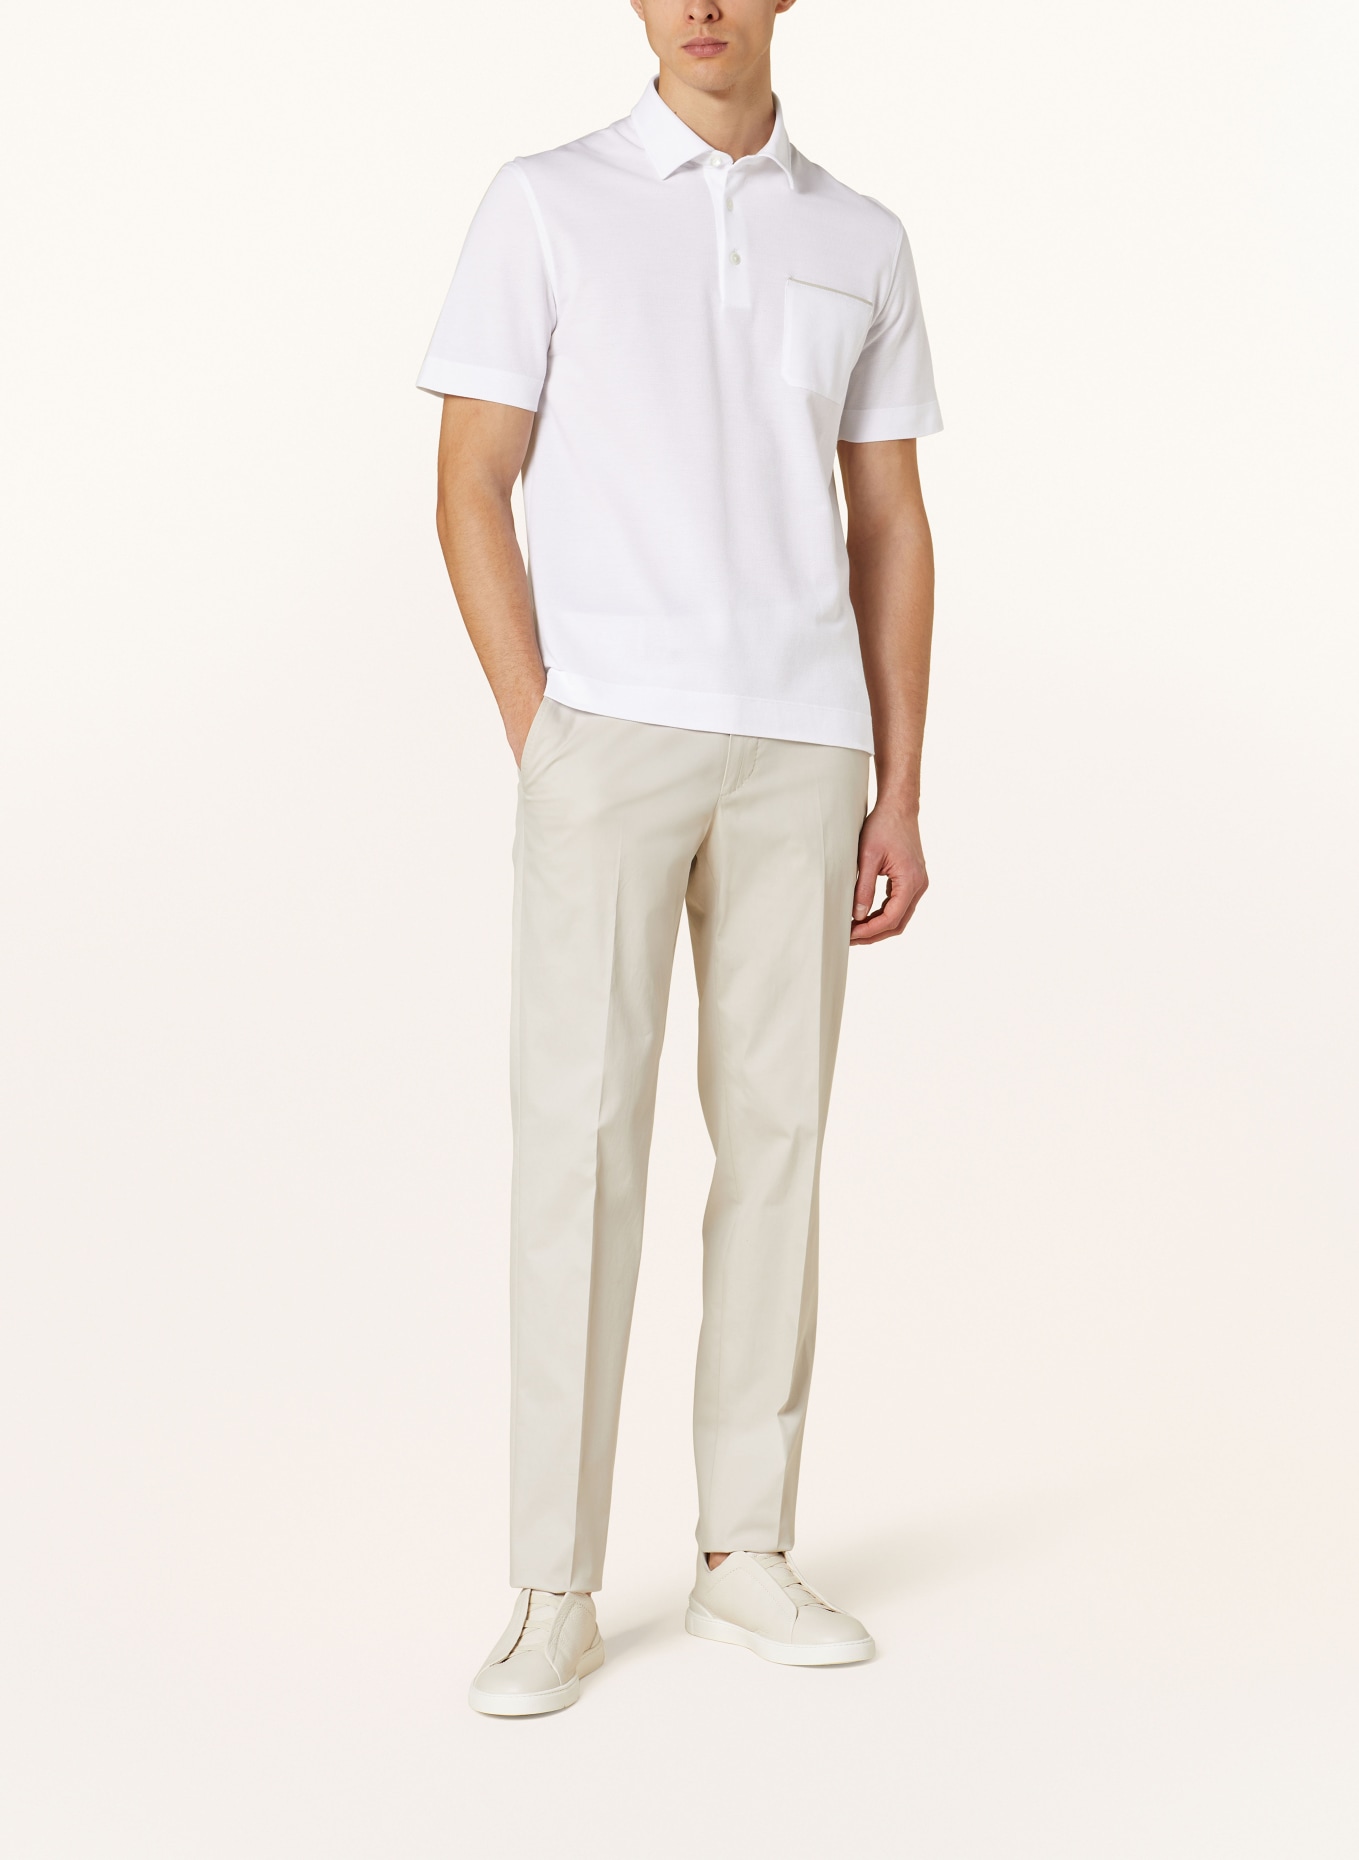 ZEGNA Piqué polo shirt slim fit, Color: WHITE (Image 2)